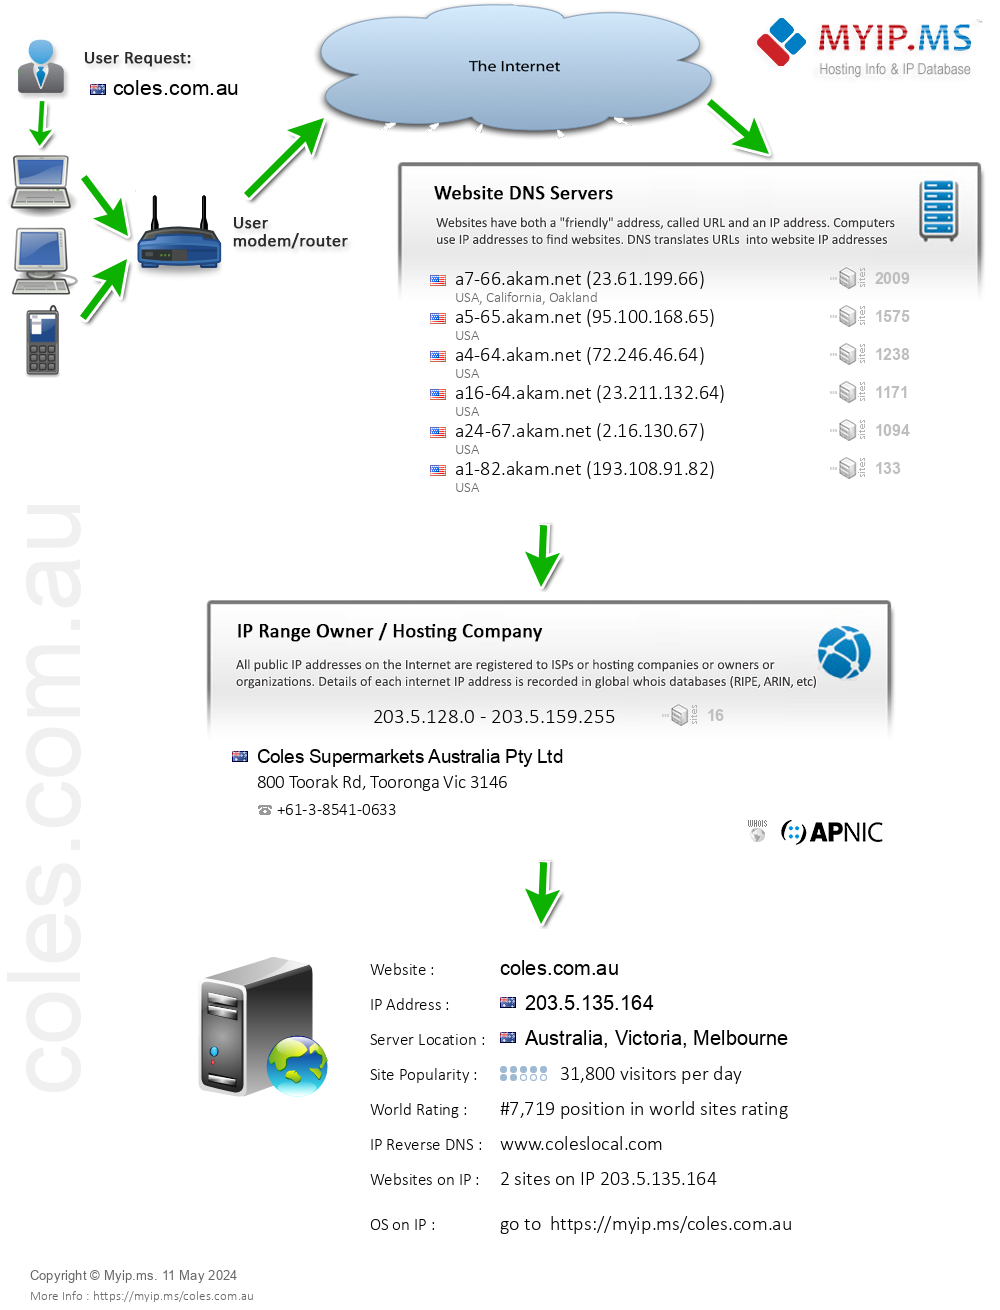 Coles.com.au - Website Hosting Visual IP Diagram